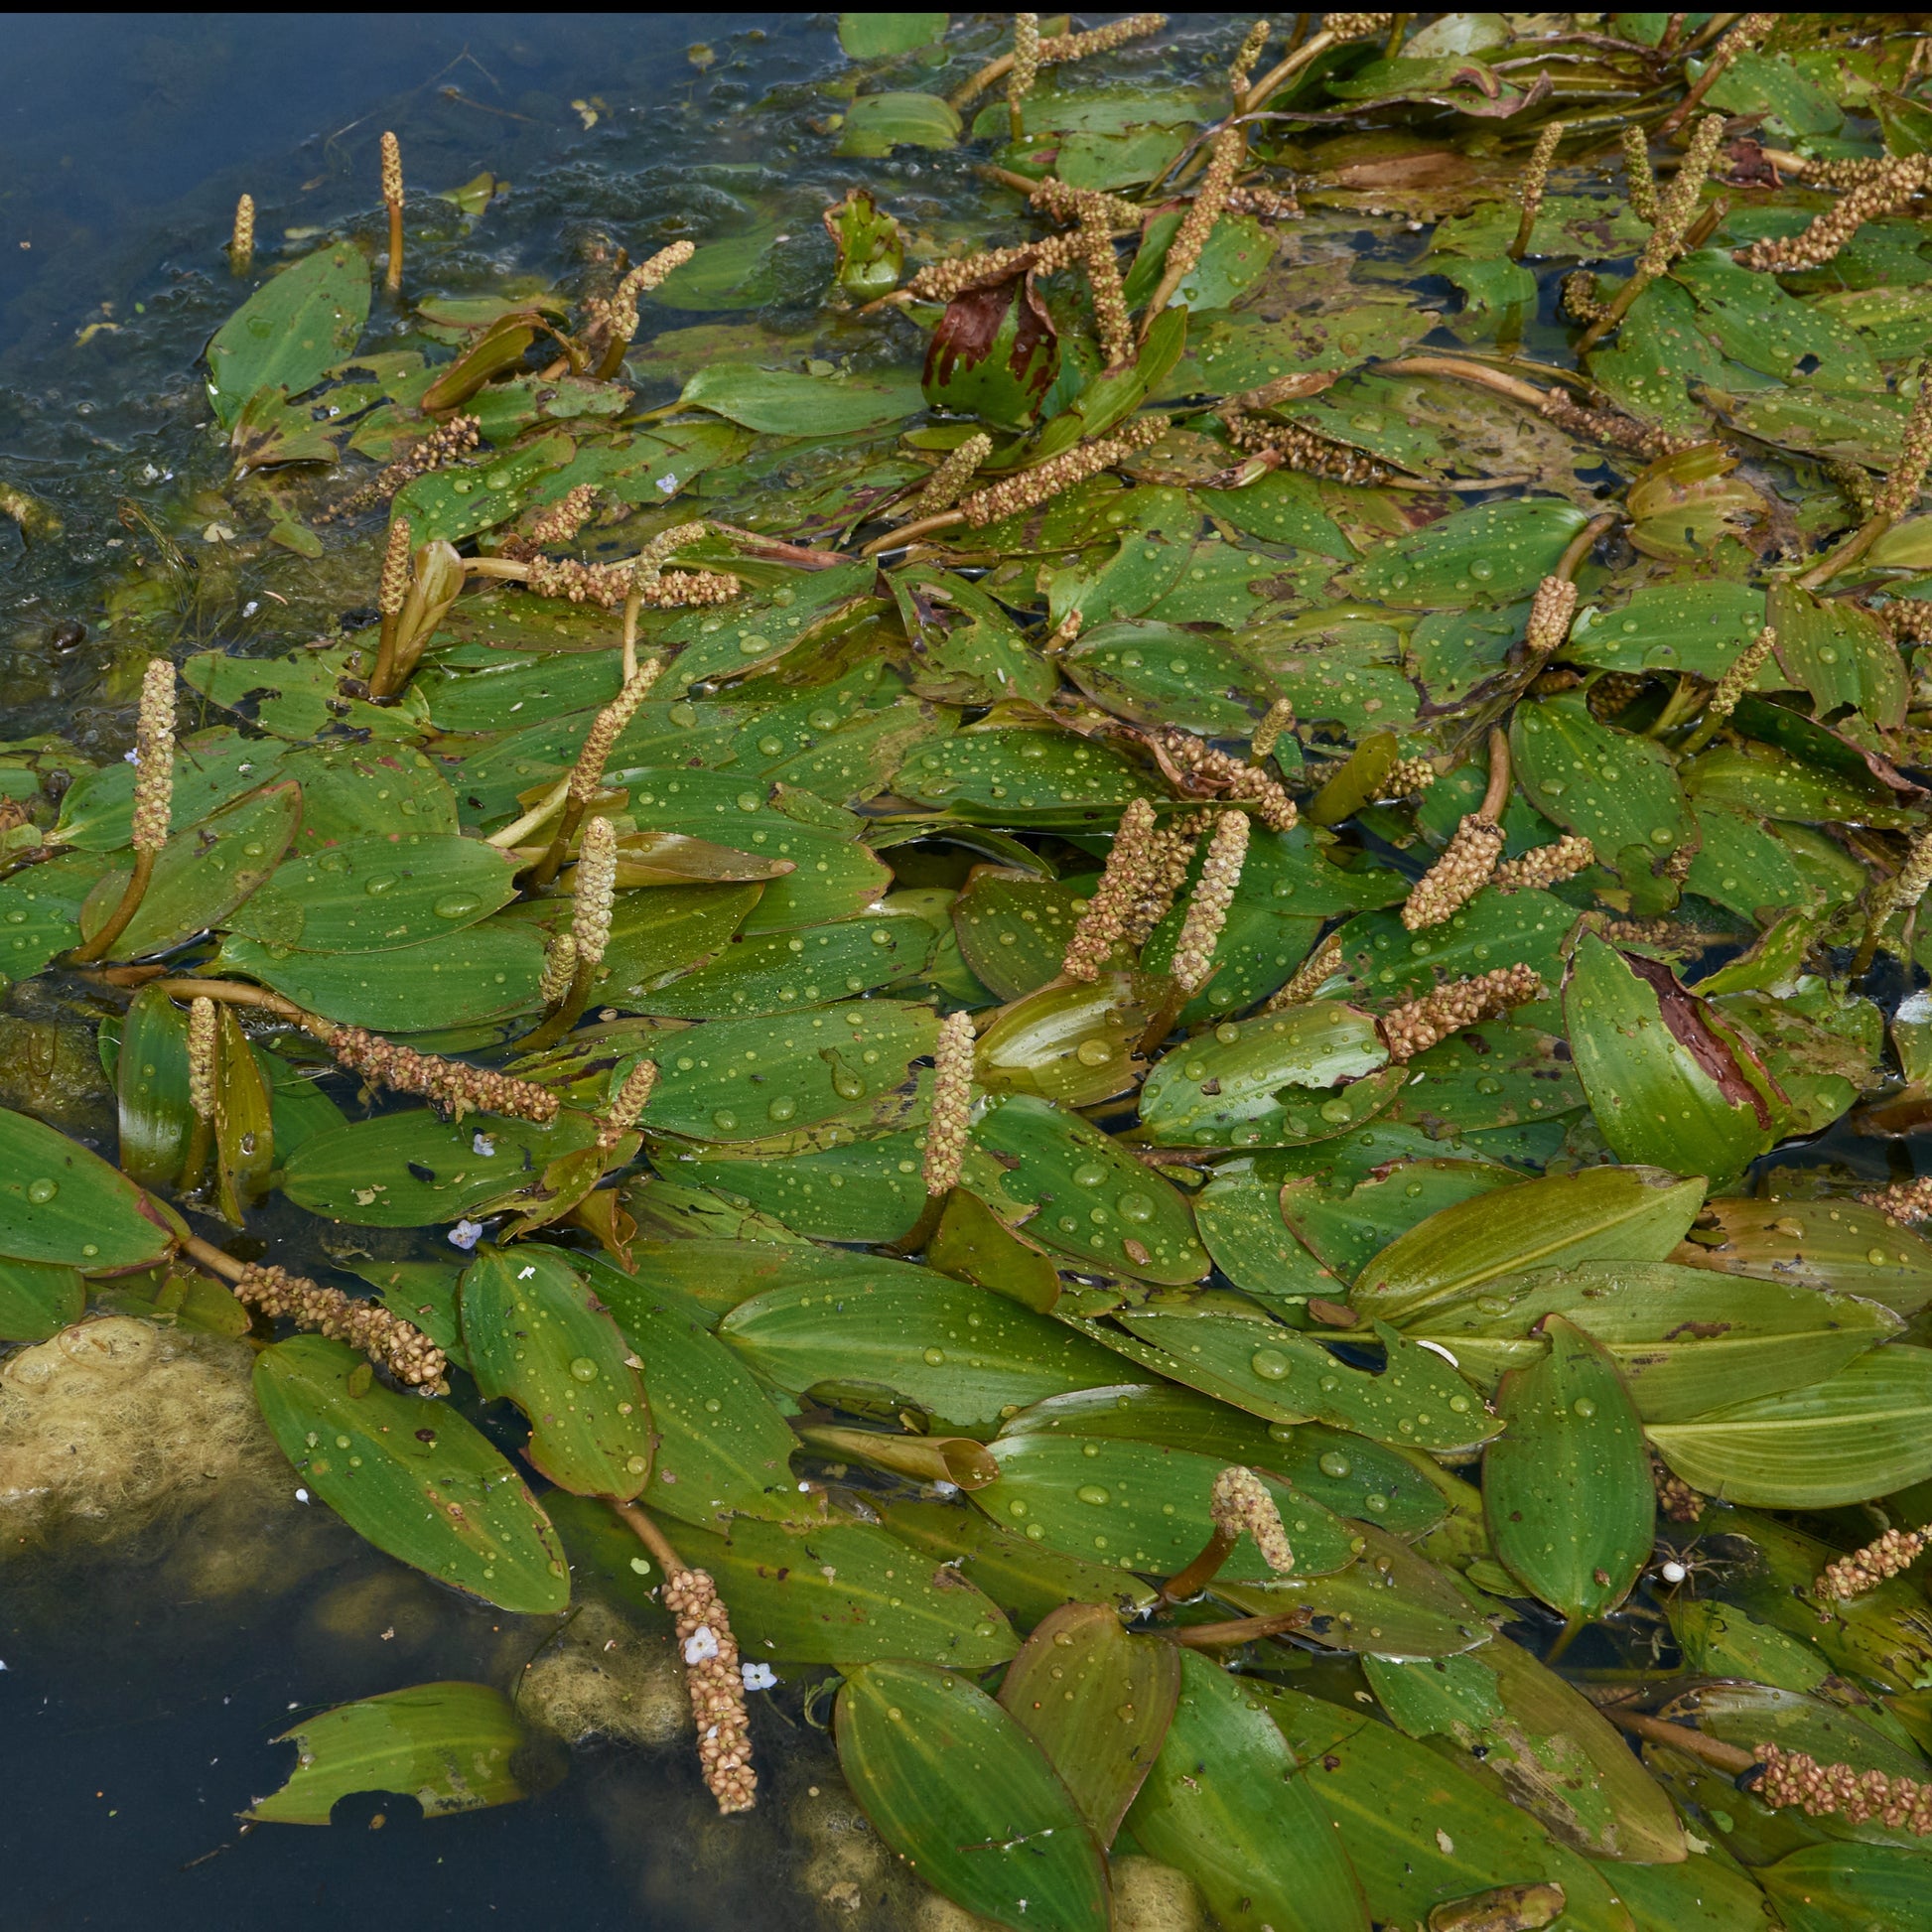 Potamot nageant - Potamogeton natans - Toutes les plantes de bassin